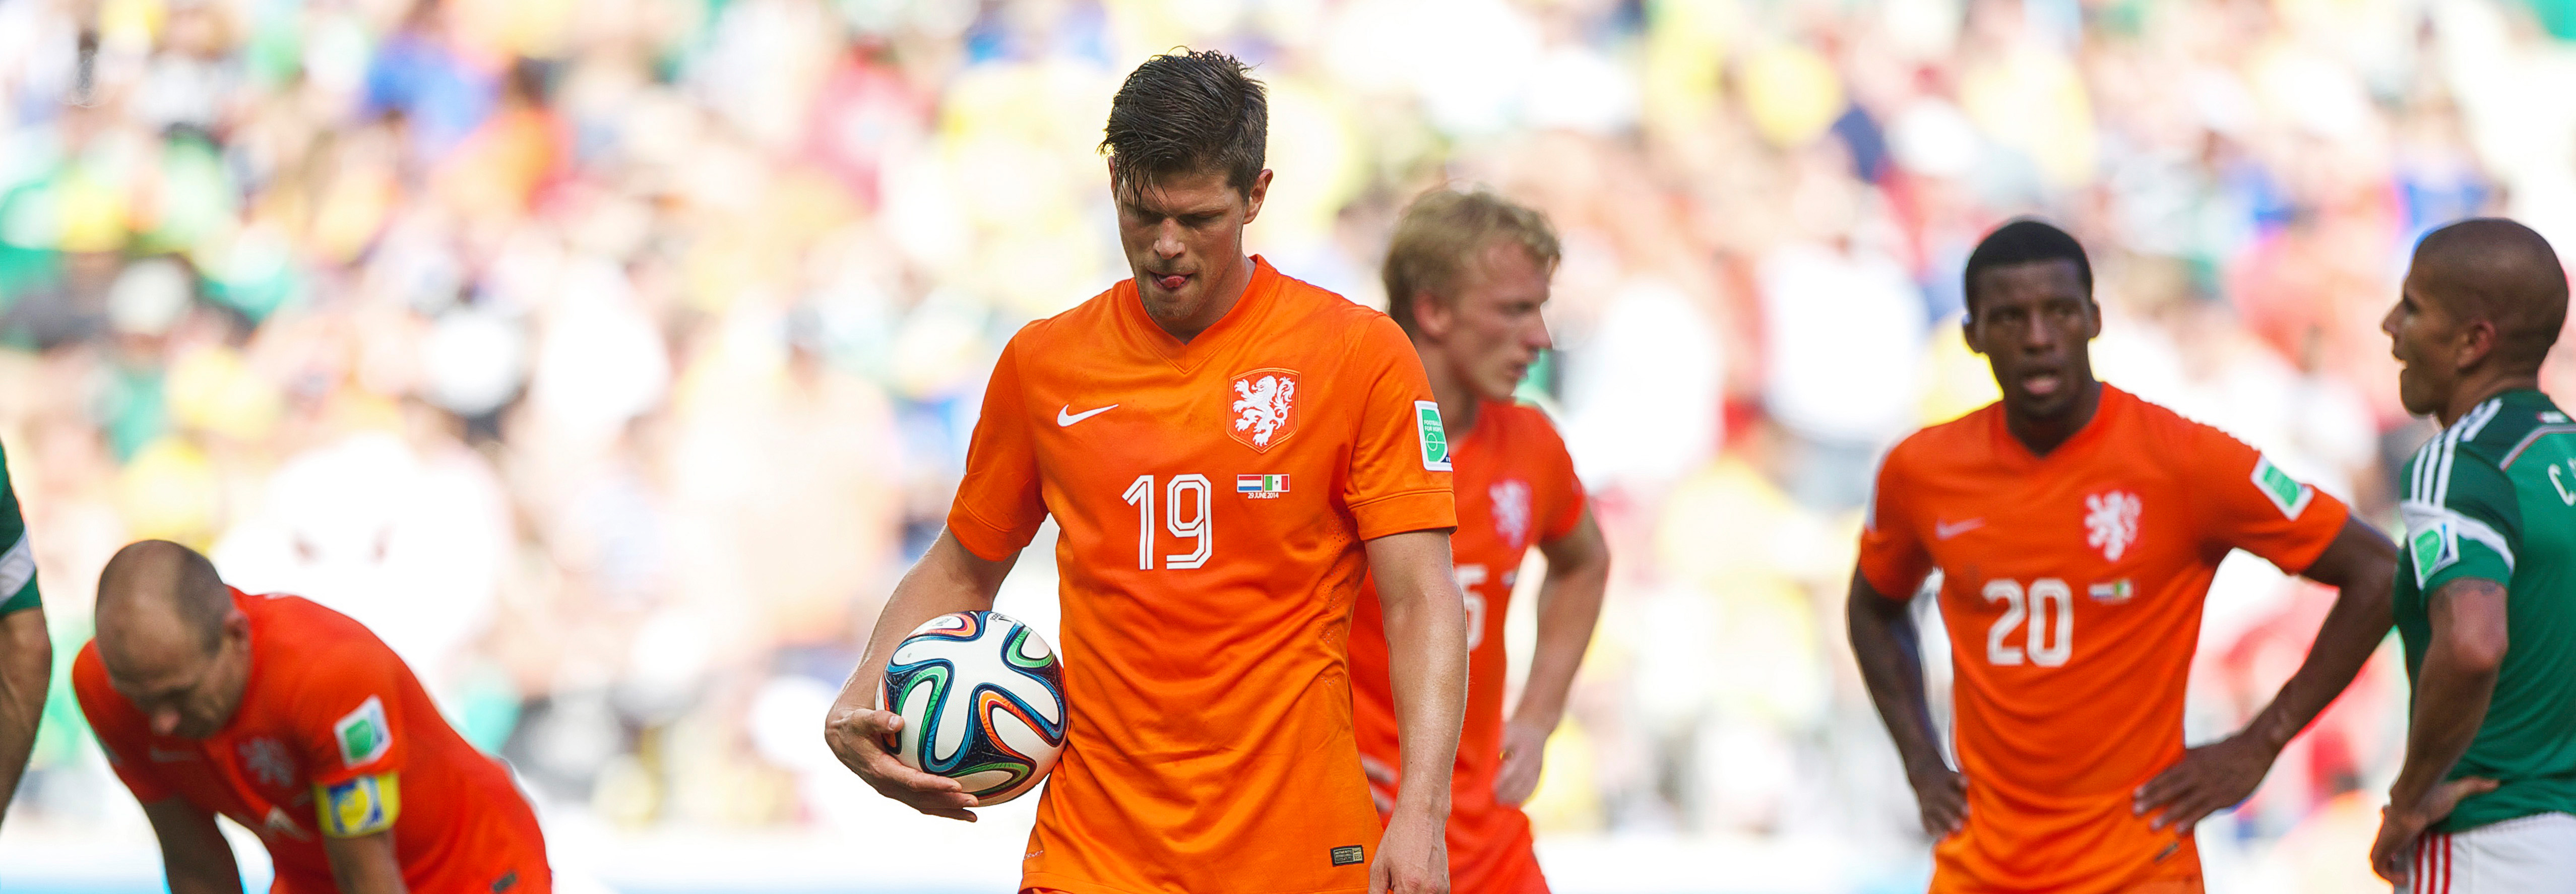 Klaas-Jan Huntelaar maakt zich hier op voor de penalty waarmee hij Mexico naar huis zou sturen.